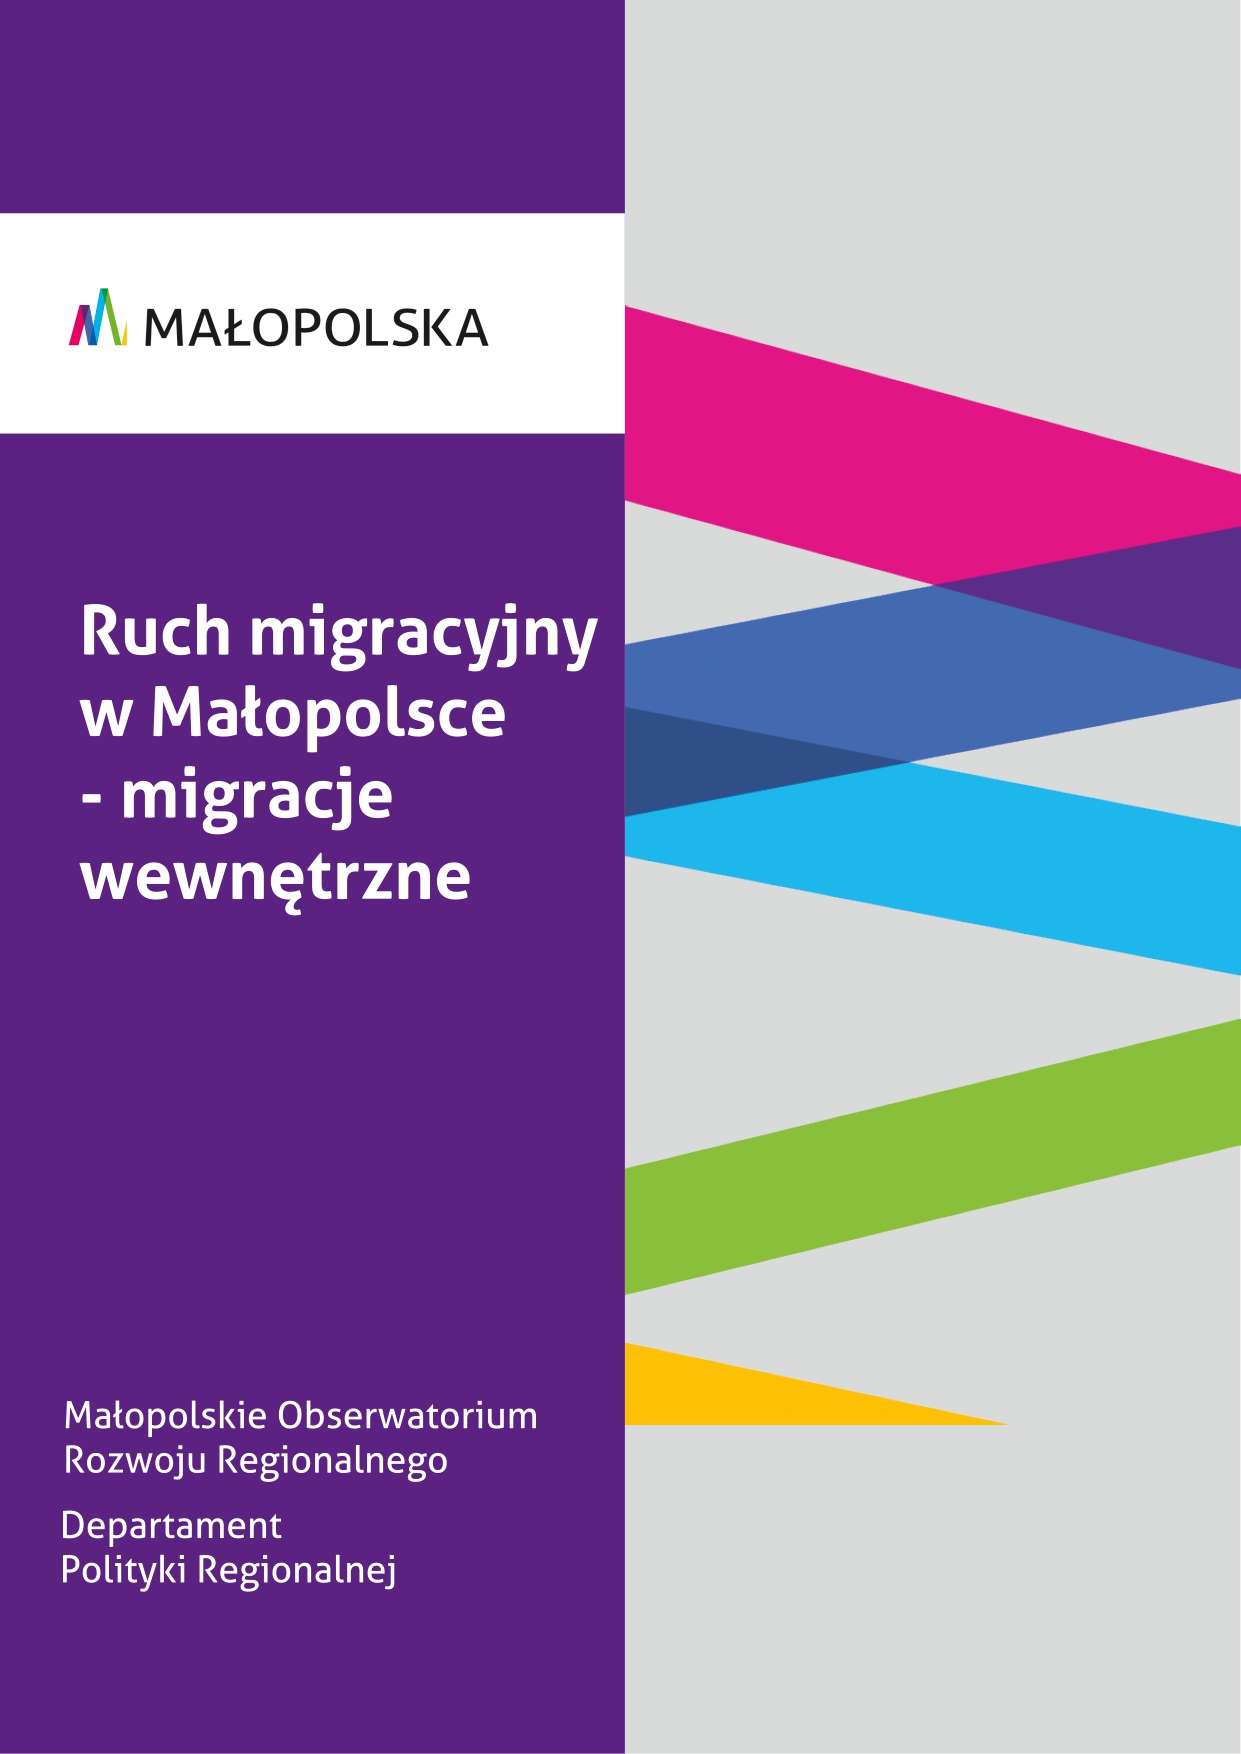 Ruch migracyjny w Małopolsce - migracje wewnętrzne